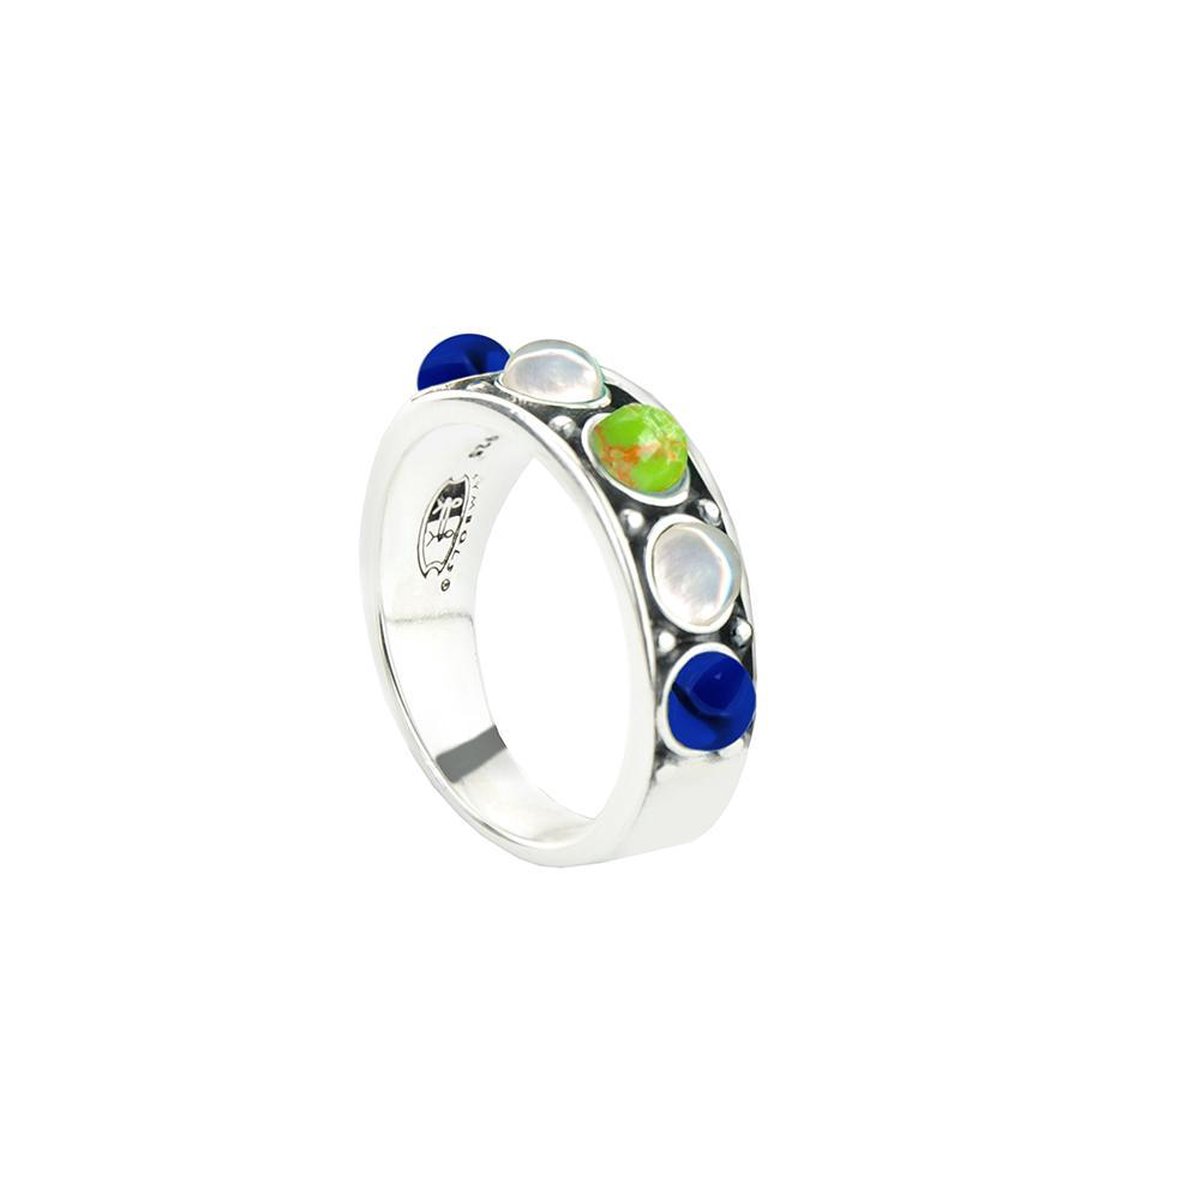 Symbols 9SY 0058 60 Zilveren Ring - #60 - Turkoois - Lapis Lazuli - Parel - Multikleuren - Geoxideerd